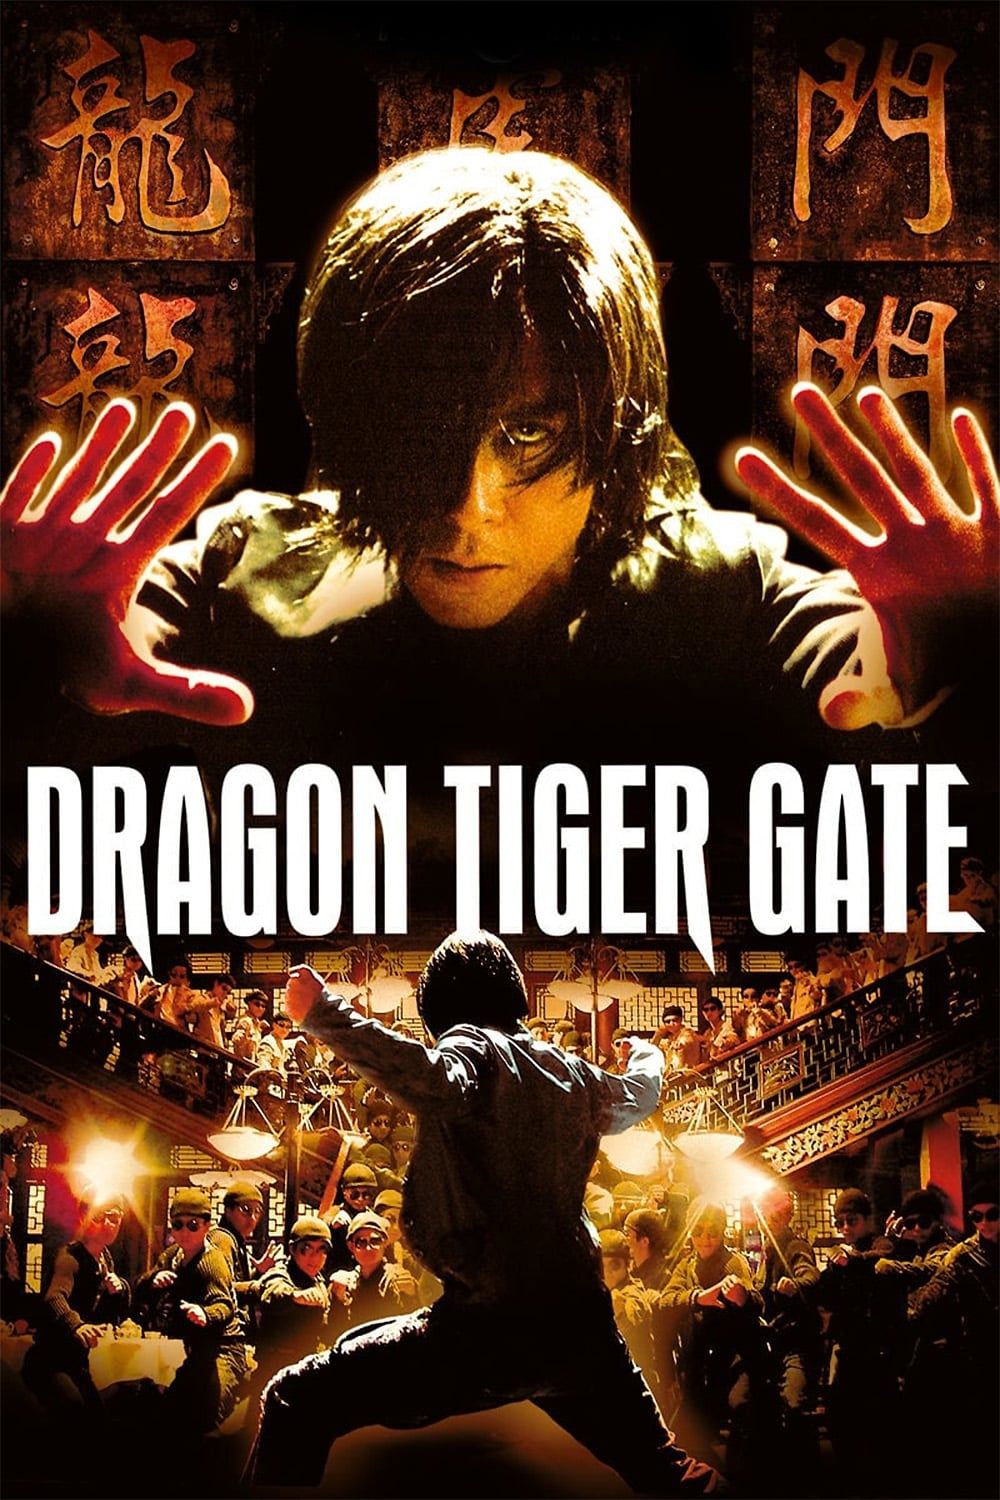 Gate : Movies & TV 